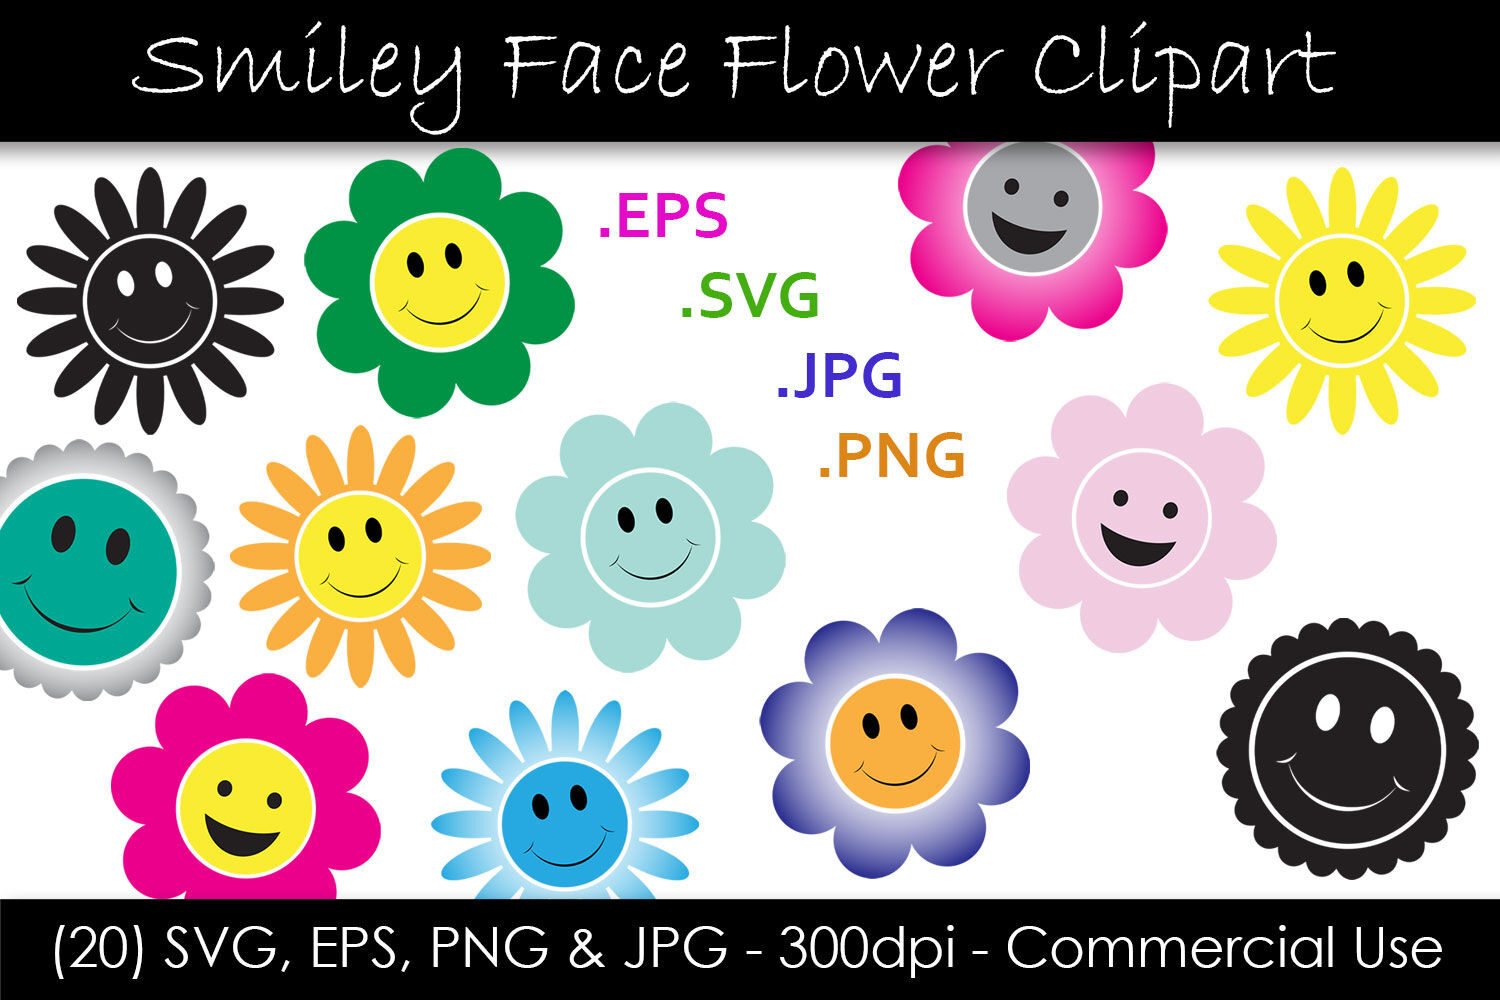 Flower Smiley Face SVG Files, Flower Face SVG, Smiley Face Clip Art, Trendy  Smiley Face Svg, Daisy svg, dxf, eps, Vector, DIGITAL